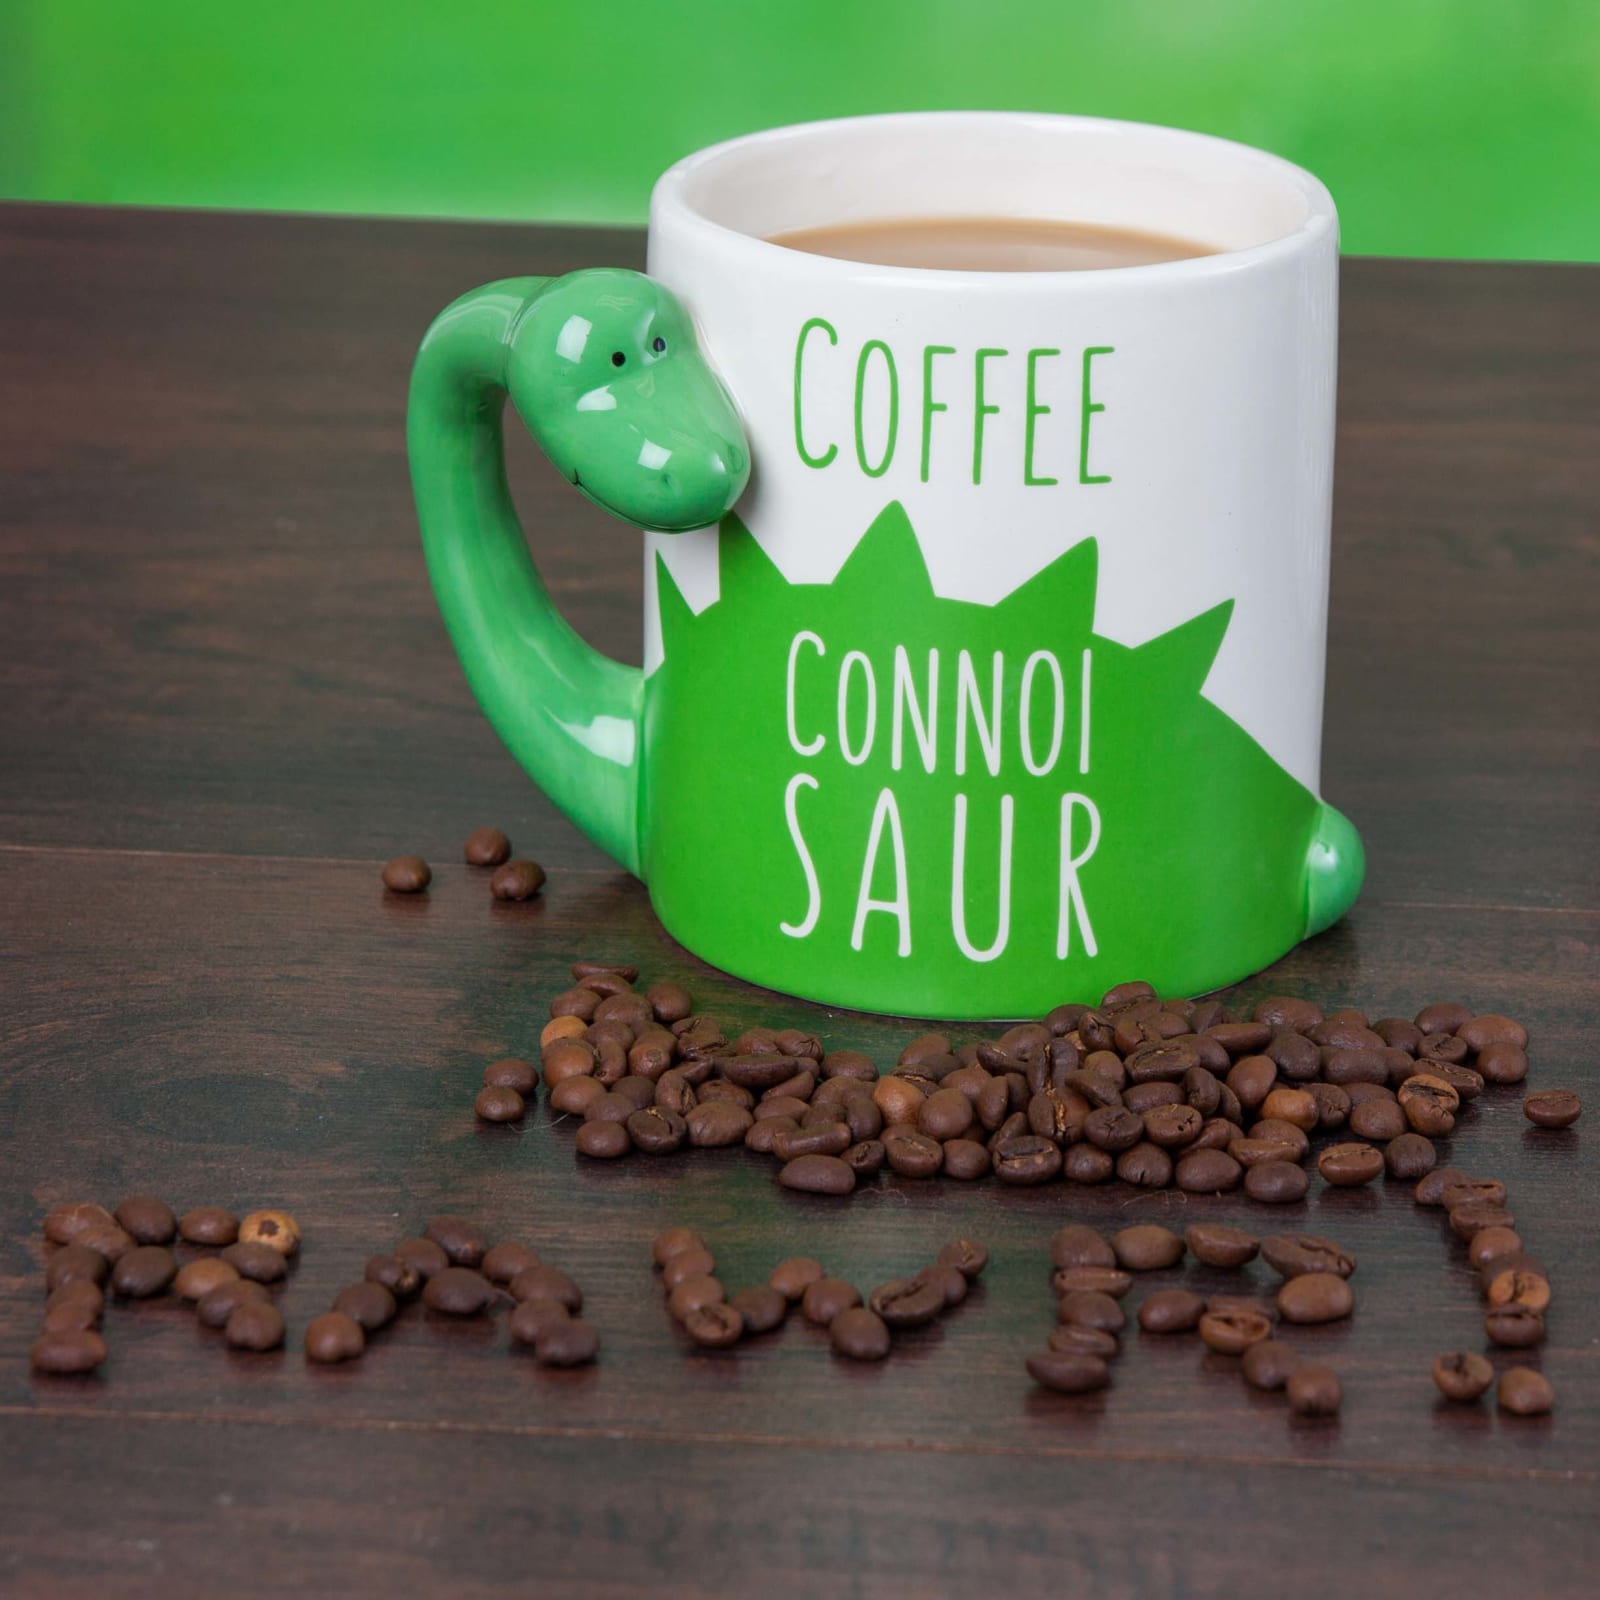 The Dinosaur Coffee Mug